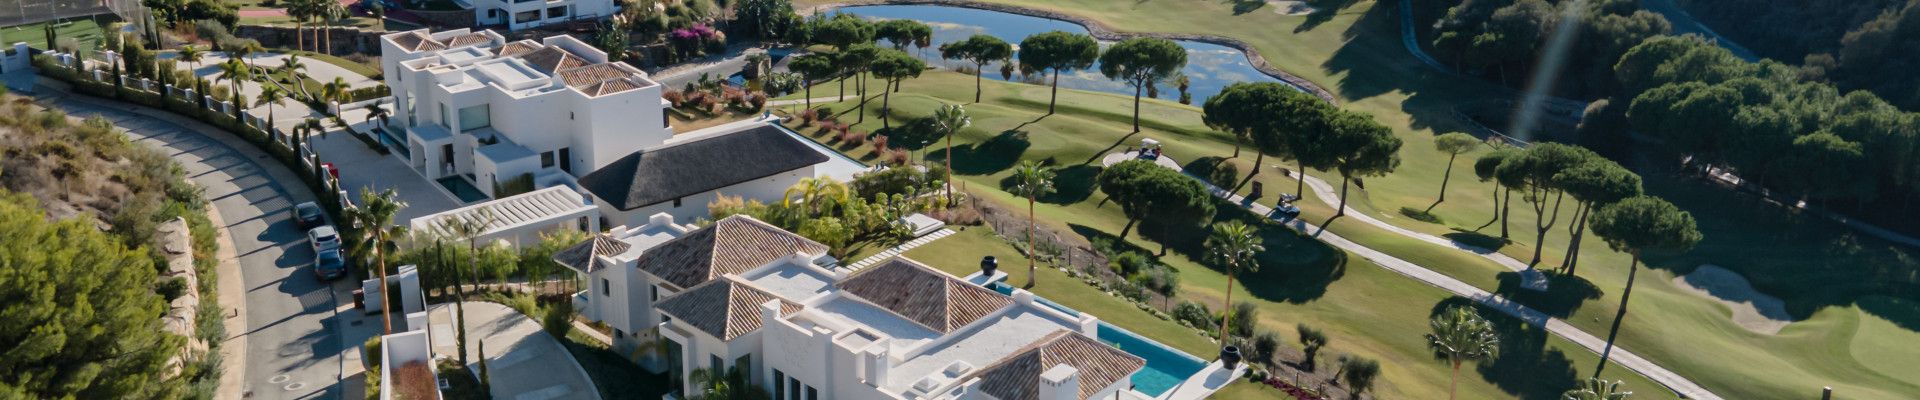  Luxury Properties for Sale in Marbella Club Golf Resort